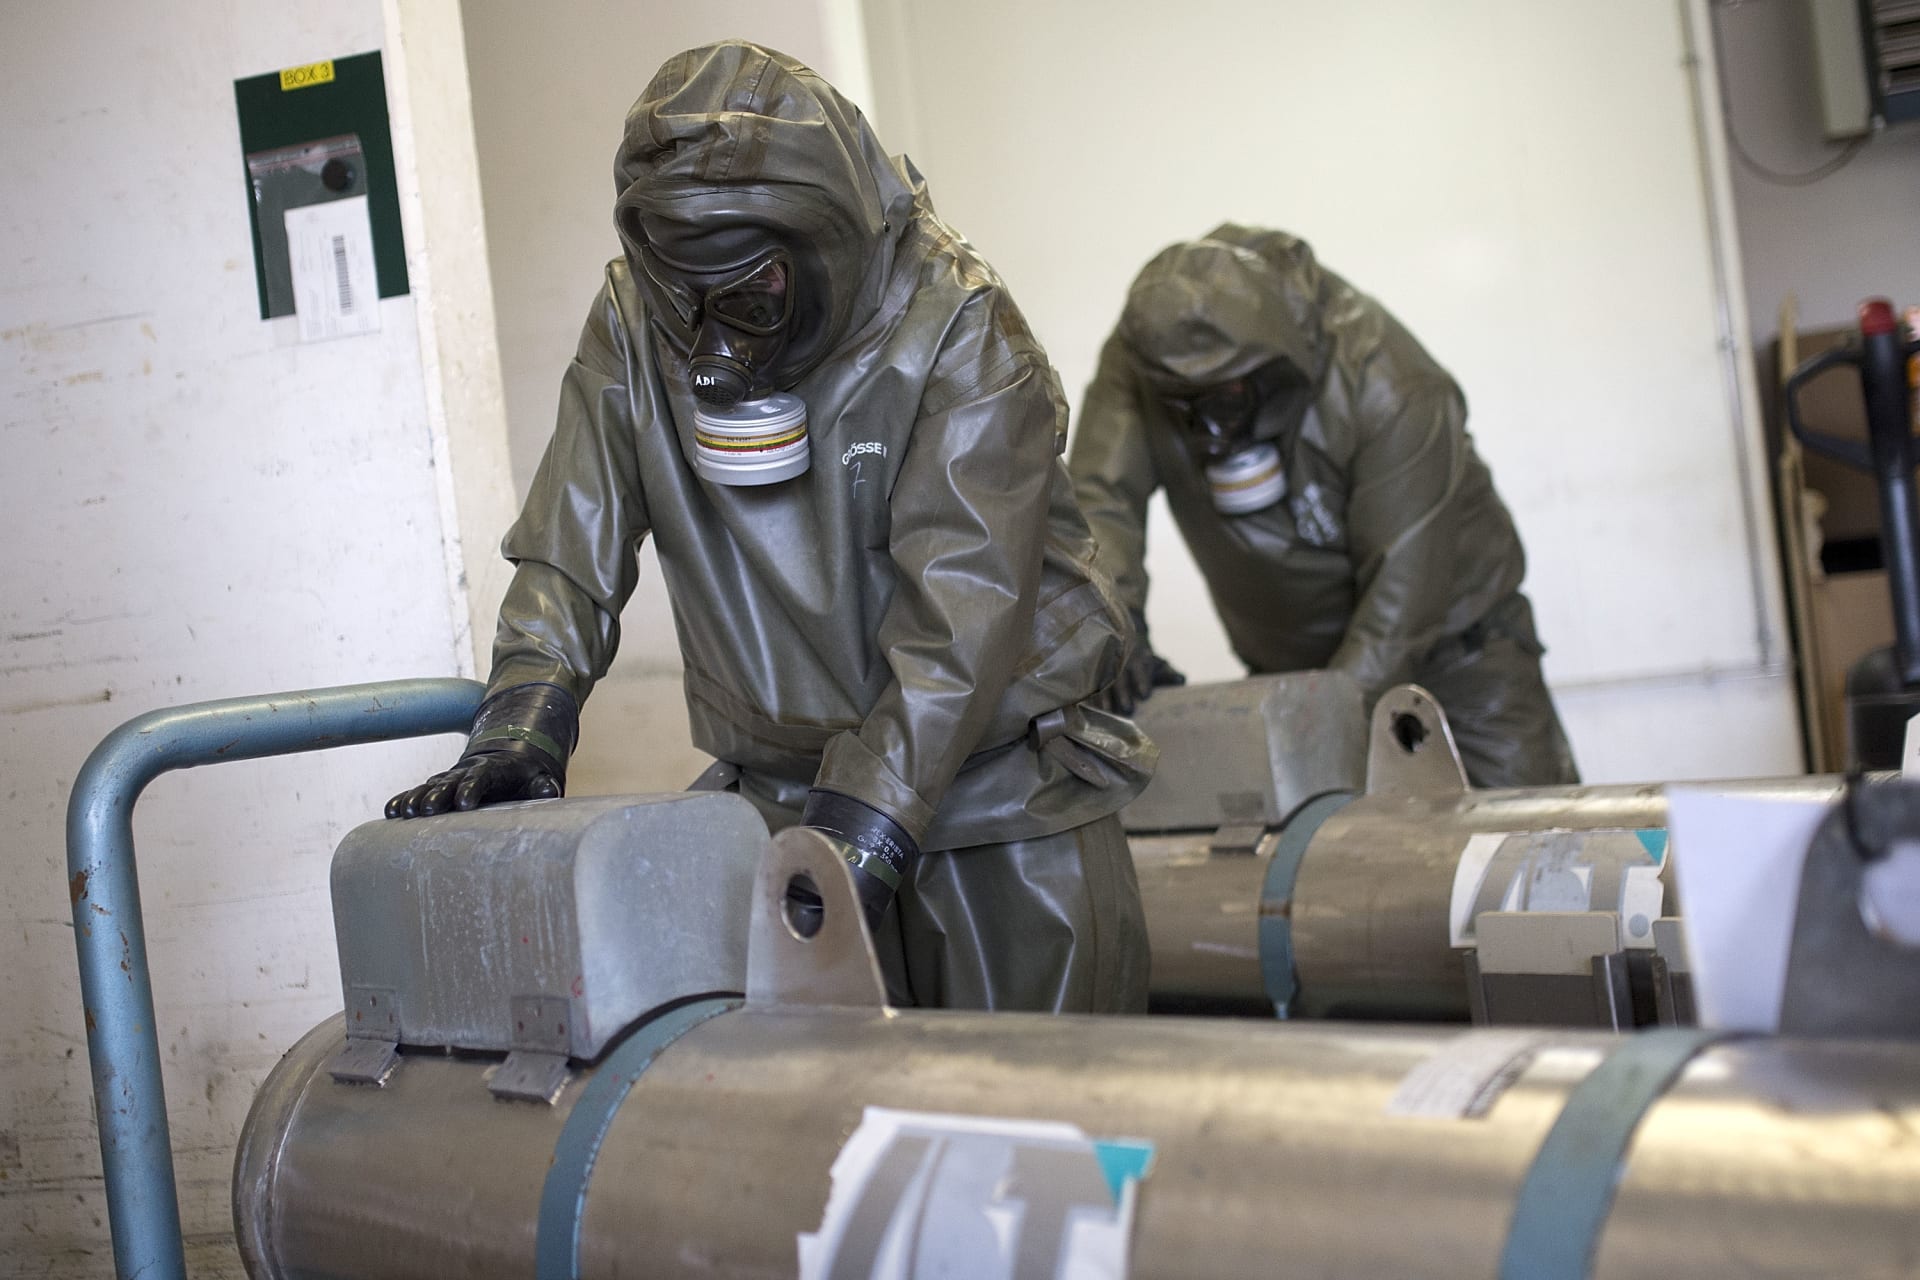 واشنطن: يستحيل إنكار استخدام نظام الأسد الأسلحة الكيماوية ضد شعب سوريا